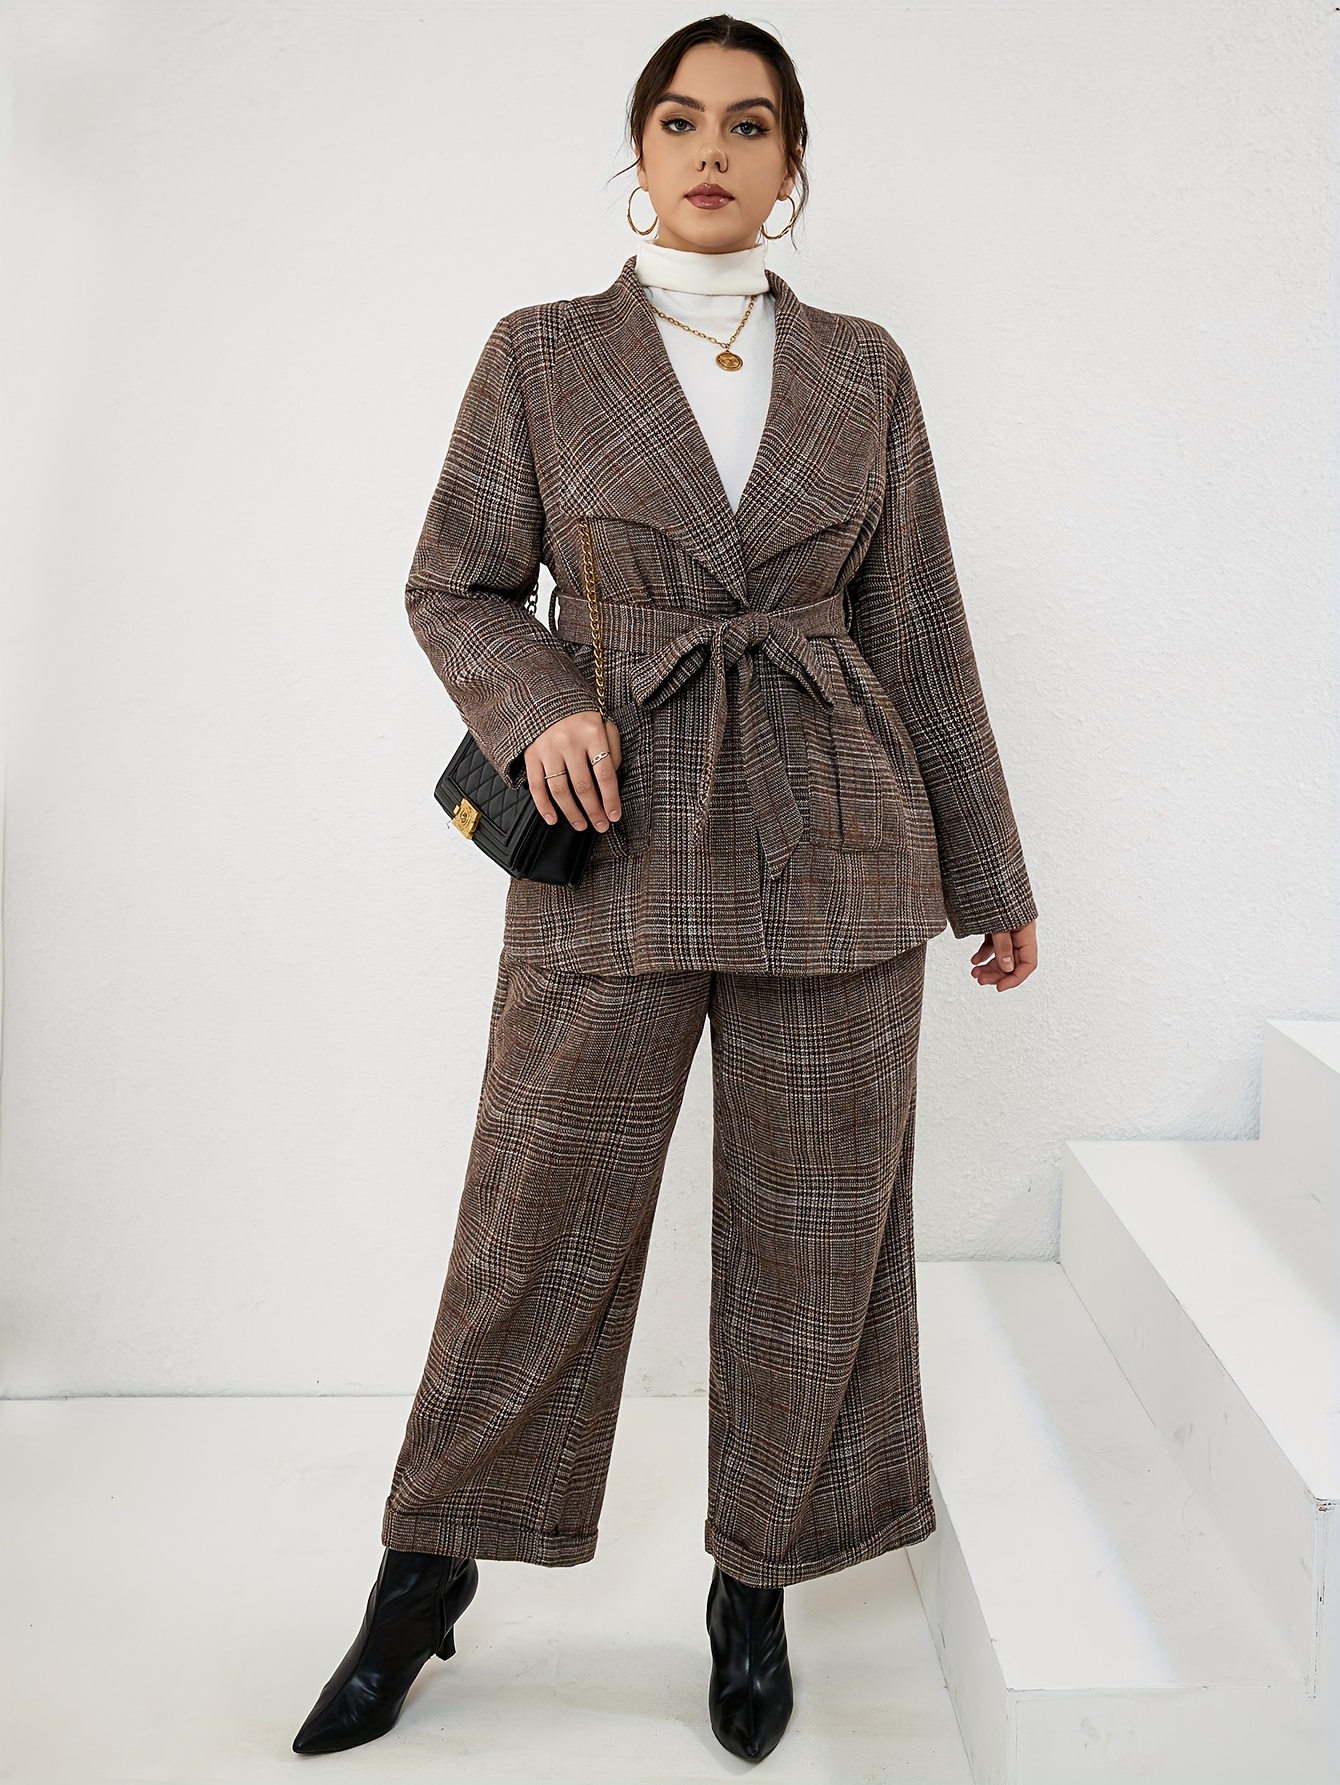 Women's Elegant 2 Pieces Blazer Set Fashion Business Suit Office Wear  Formal Blazer Pants Suits Sets 5XL